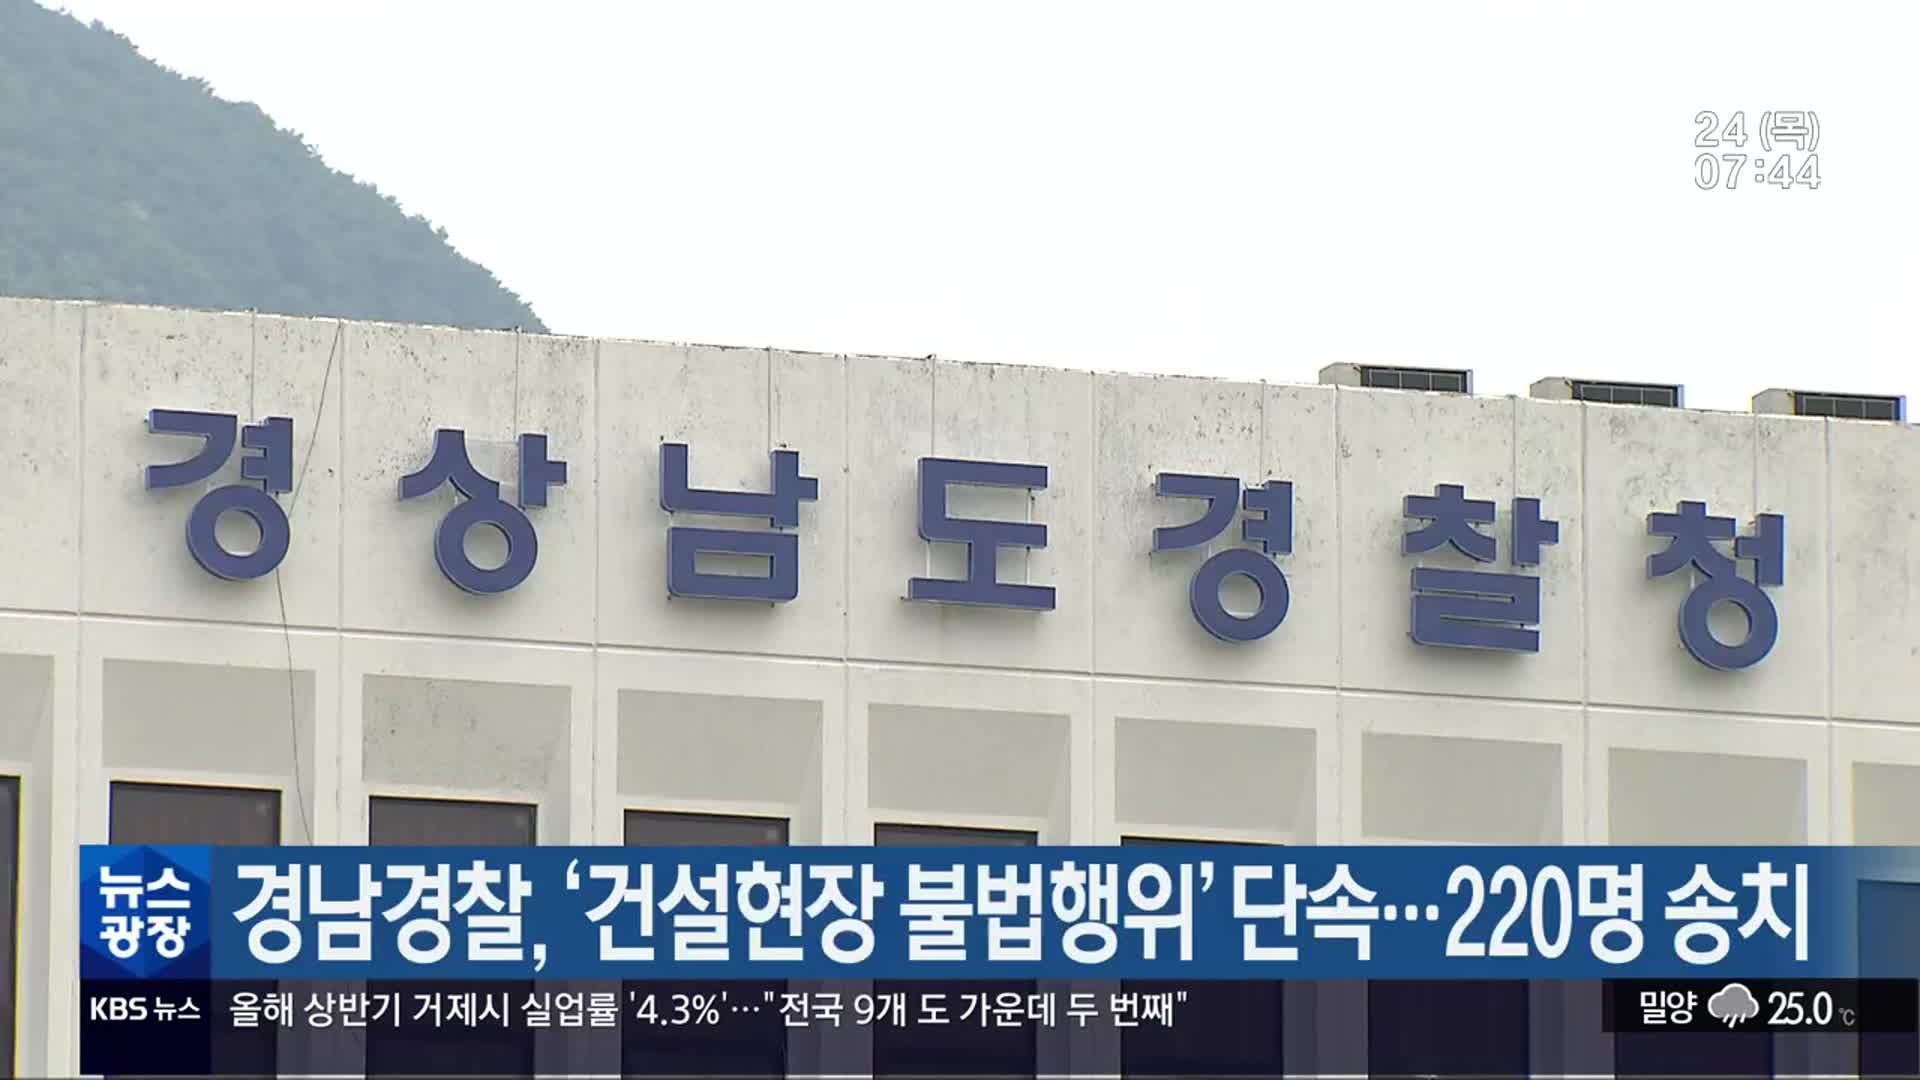 경남경찰, ‘건설현장 불법 행위’ 단속…220명 송치